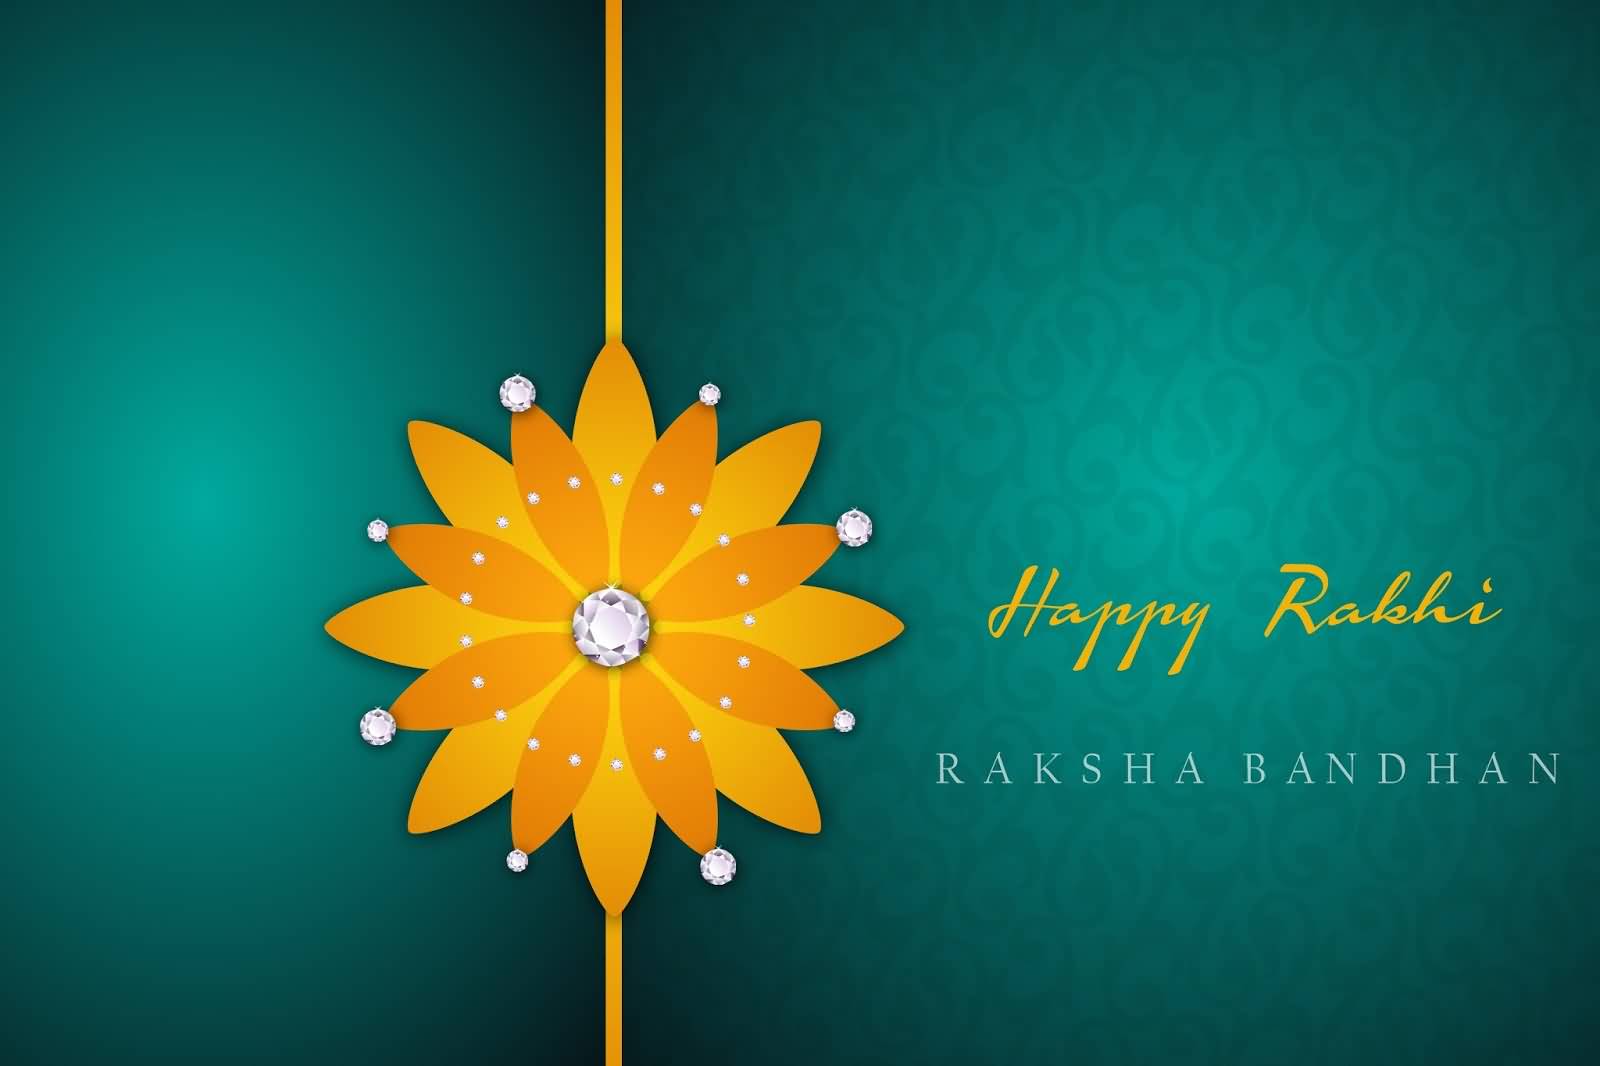 Happy Rakhi Raksha Bandhan